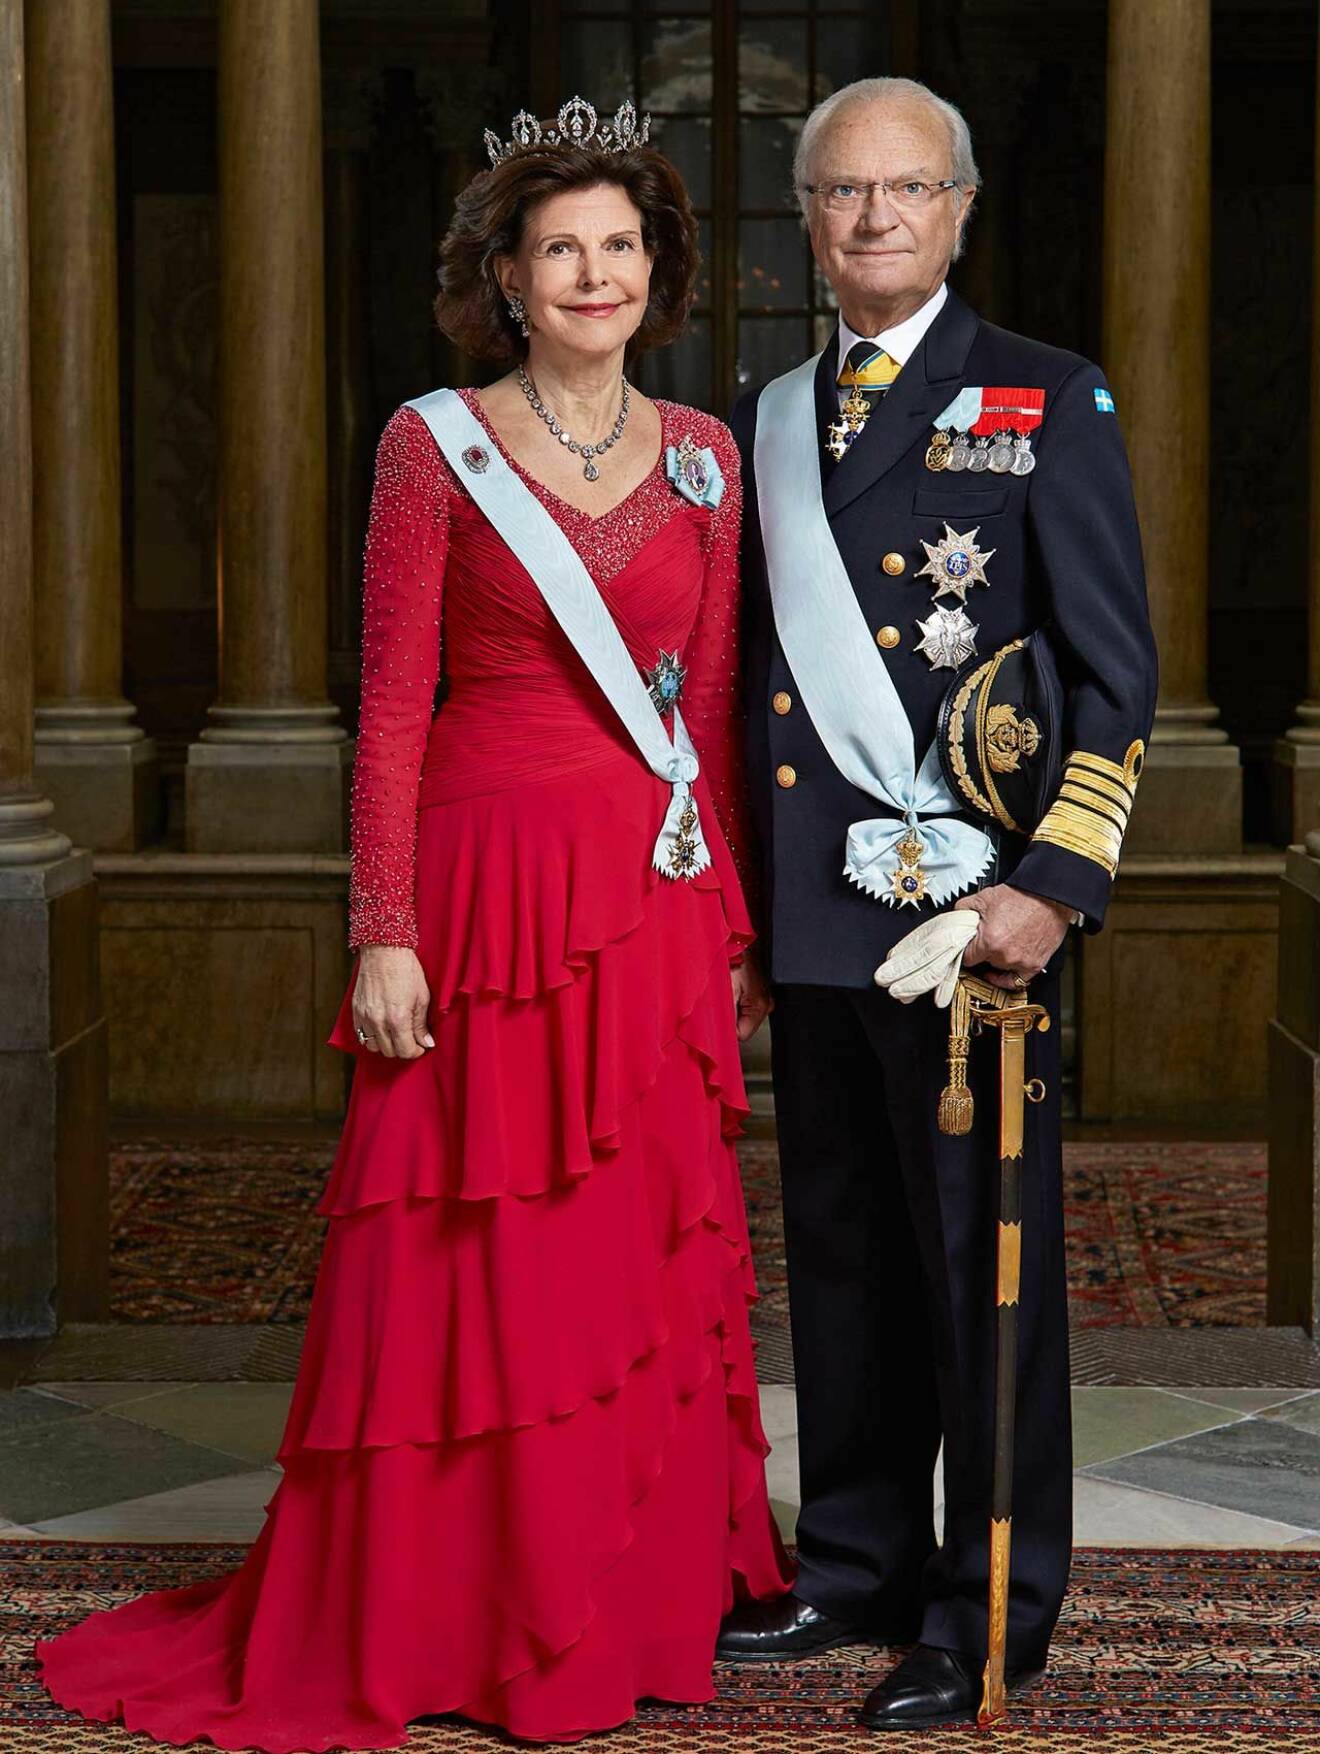 Drottningen klädd i en röd volangklänning, bredvid står kungen i uniform.